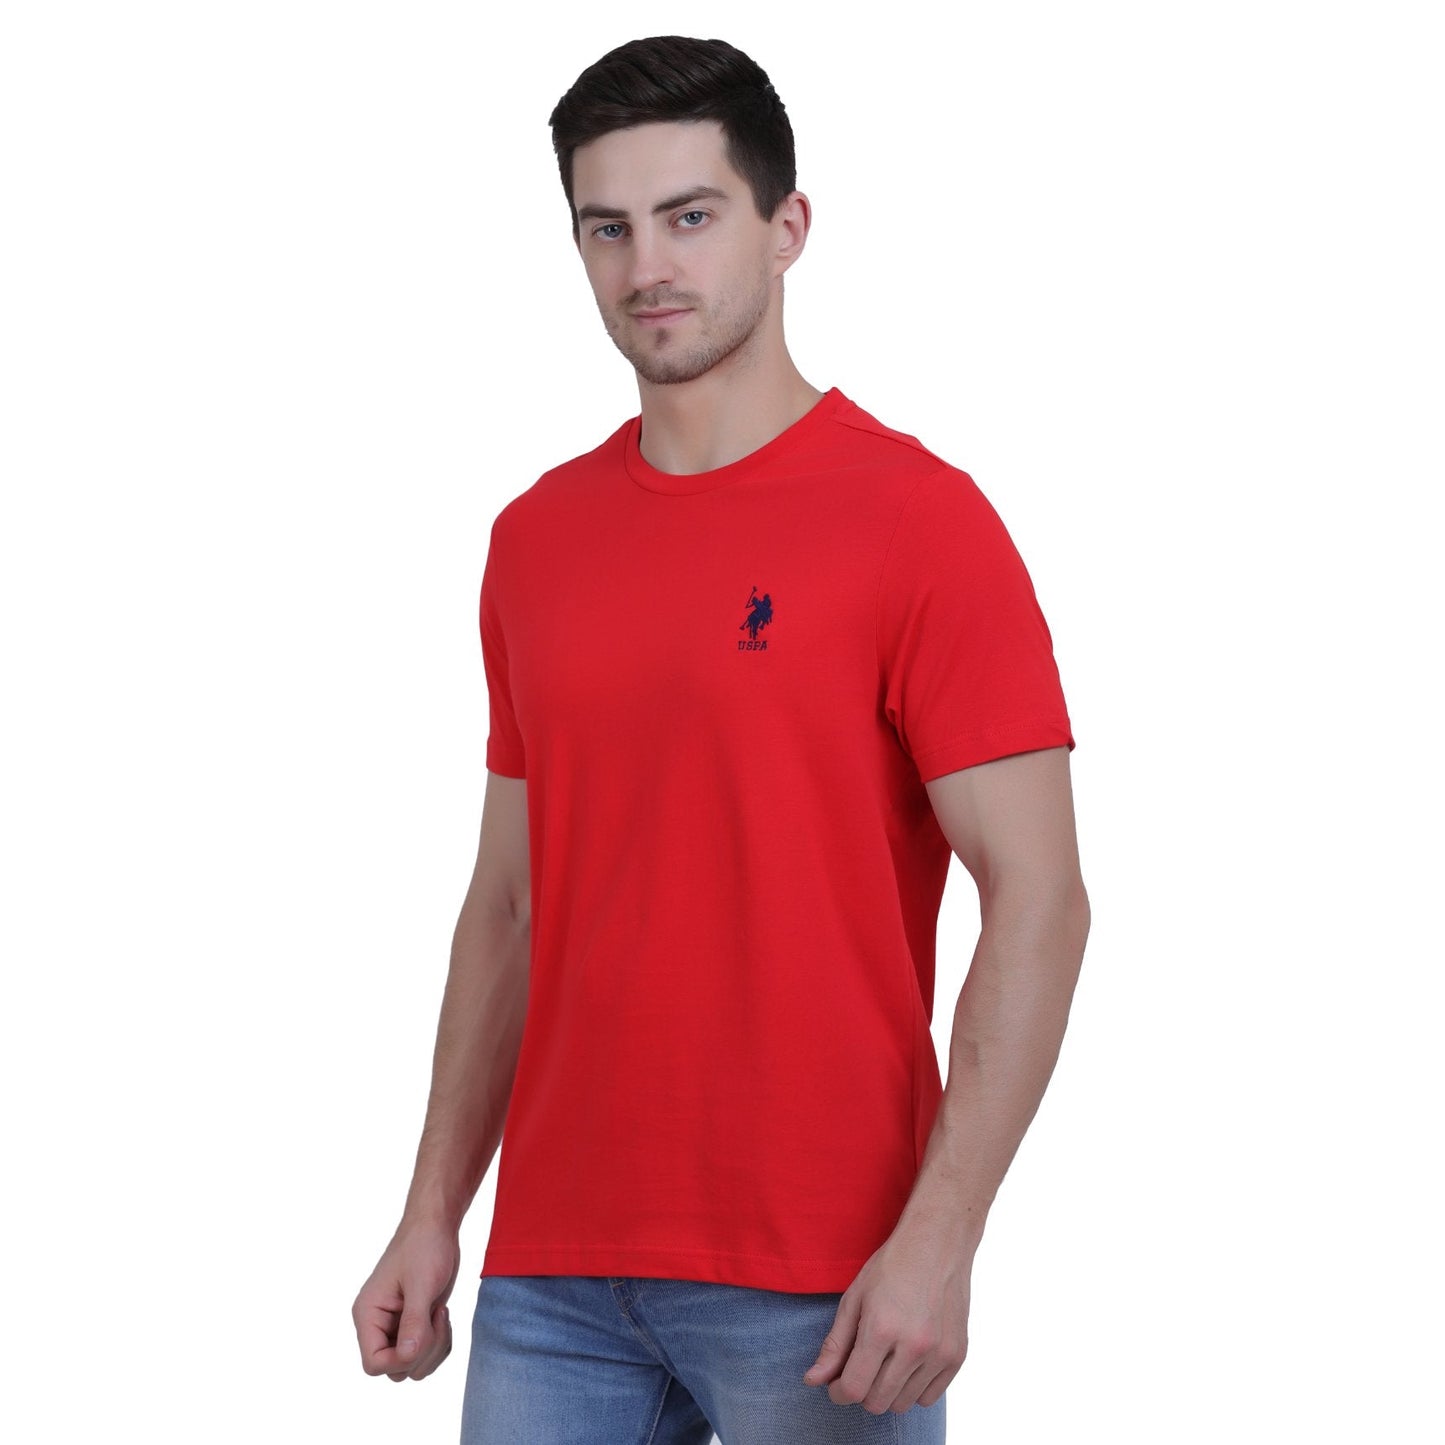 U.S. Polo Assn. Cotton Casual Red T-shirt For Men - Stilento